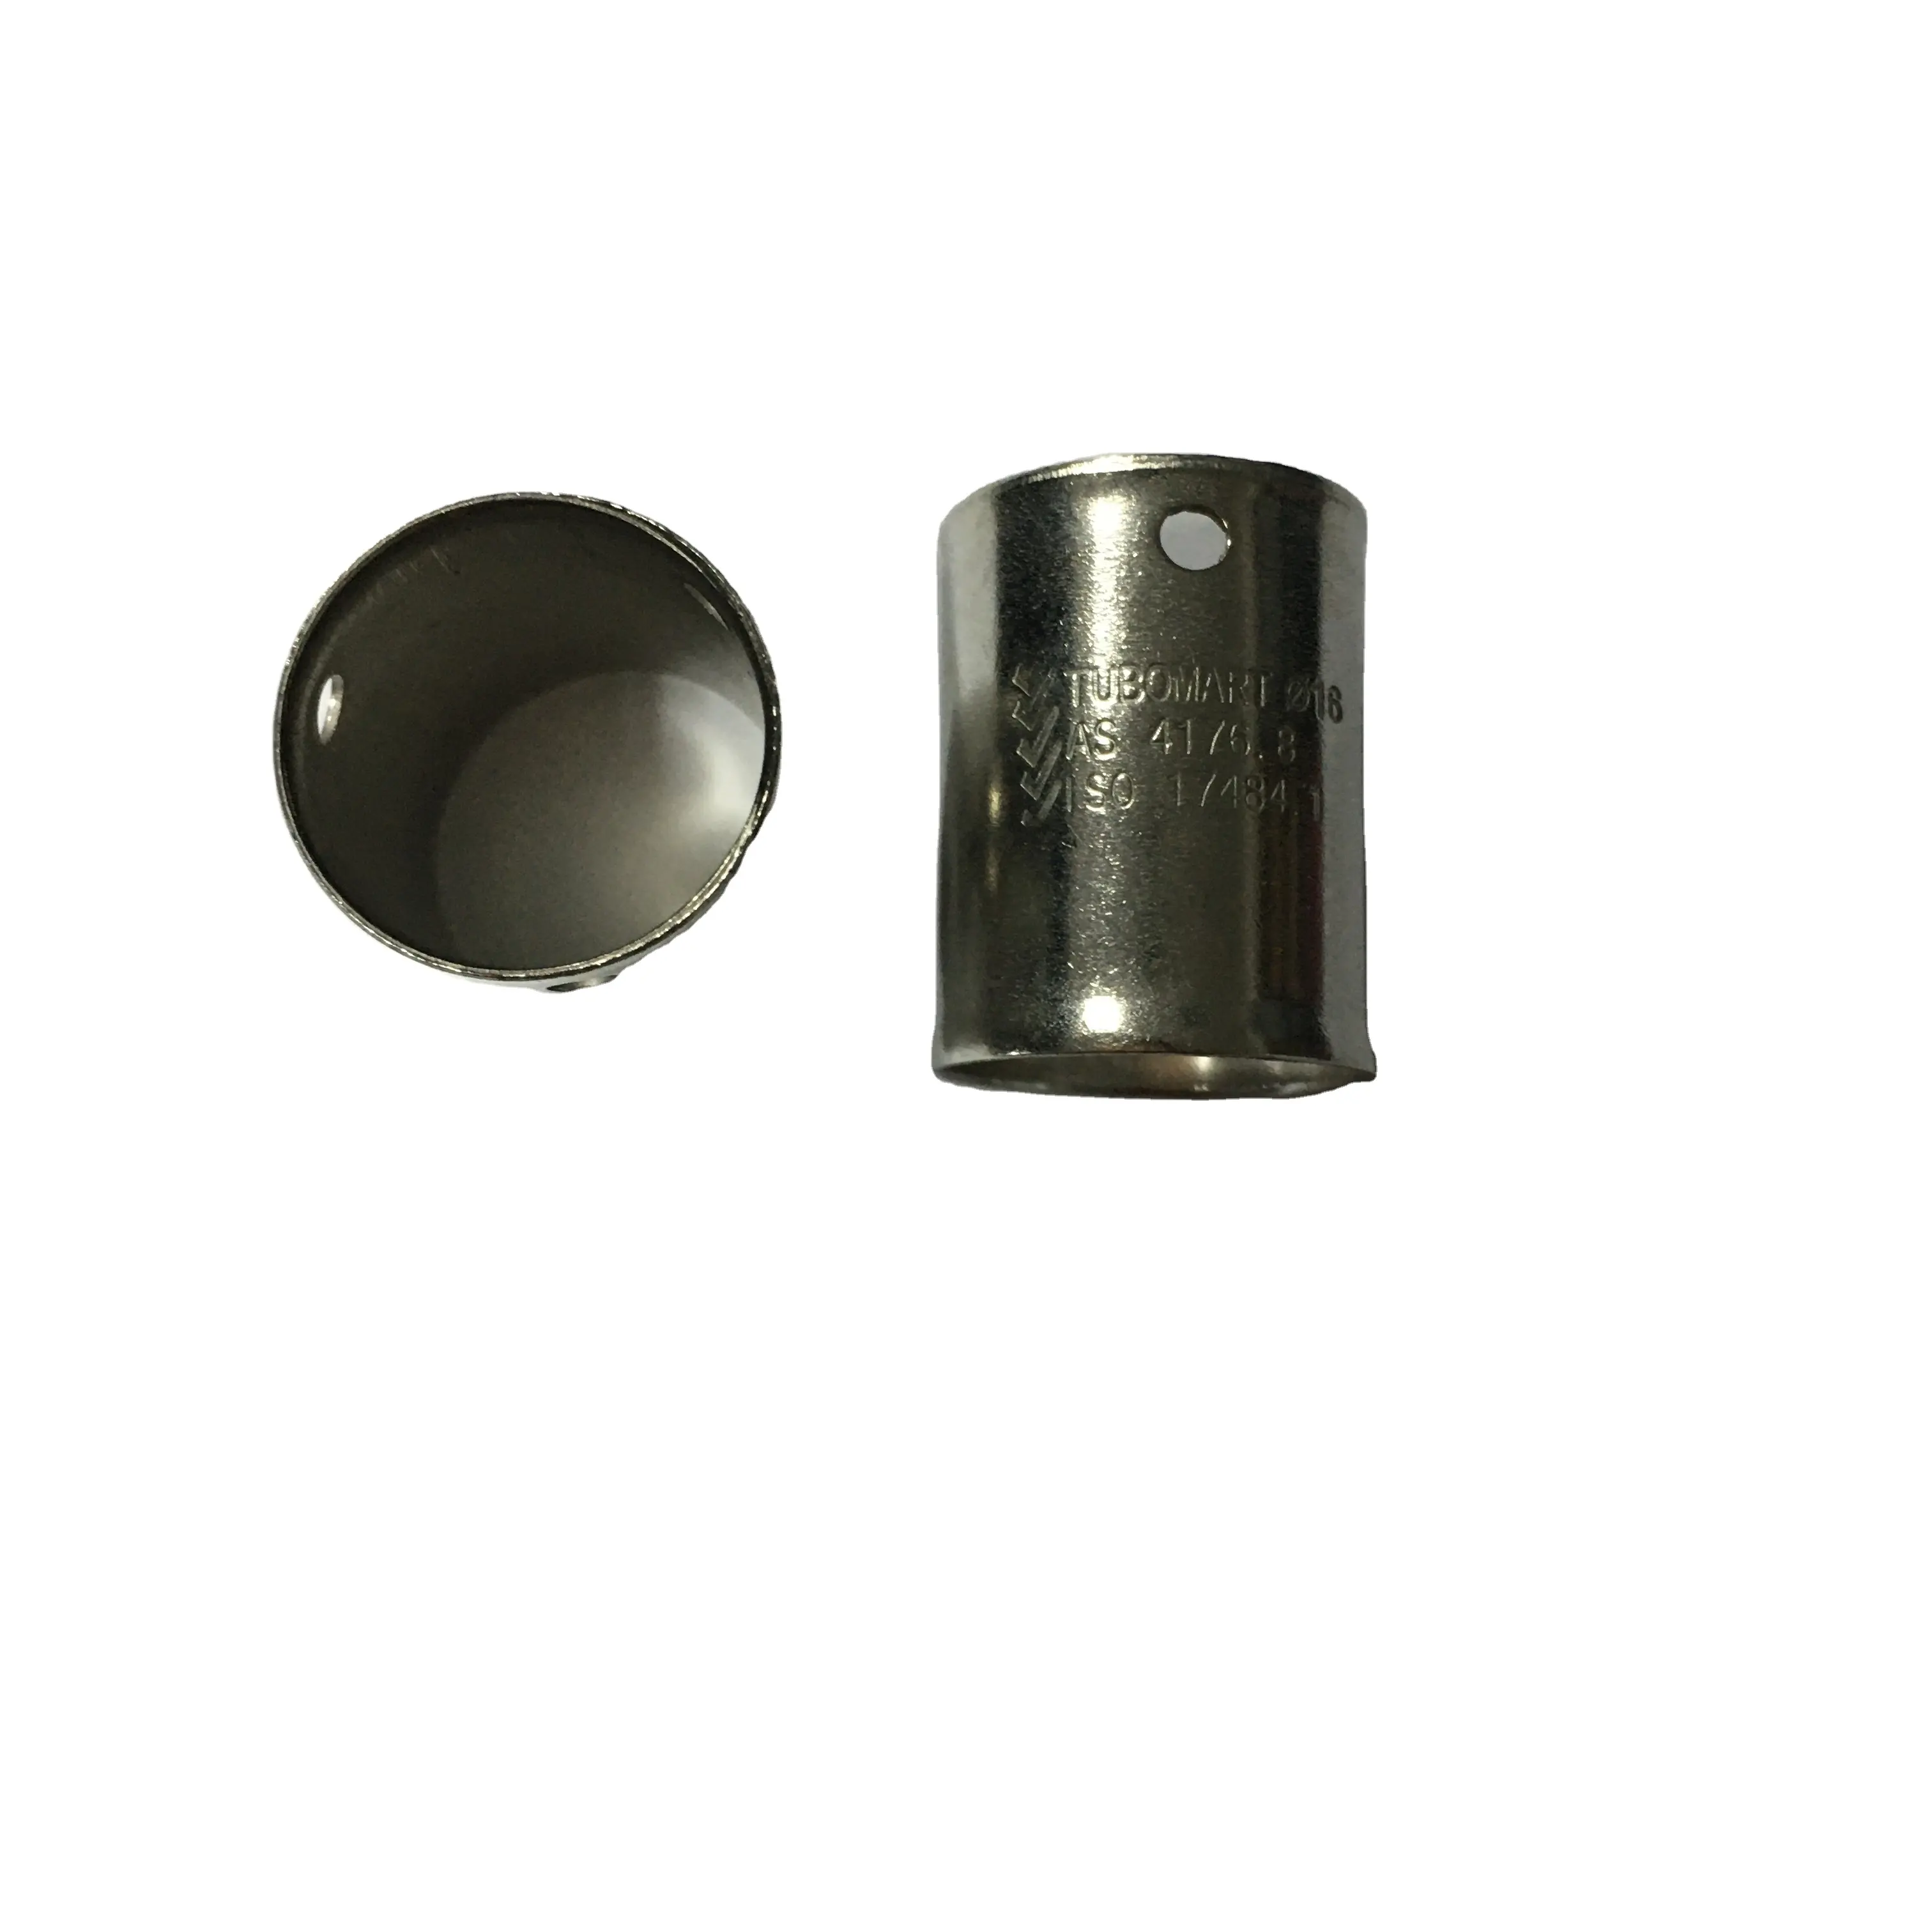 OEM, Заводская 304 стальная втулка U-го типа для фитинга, 16-32 мм, кольца для прессования из нержавеющей стали с OEM-сервисом рисования